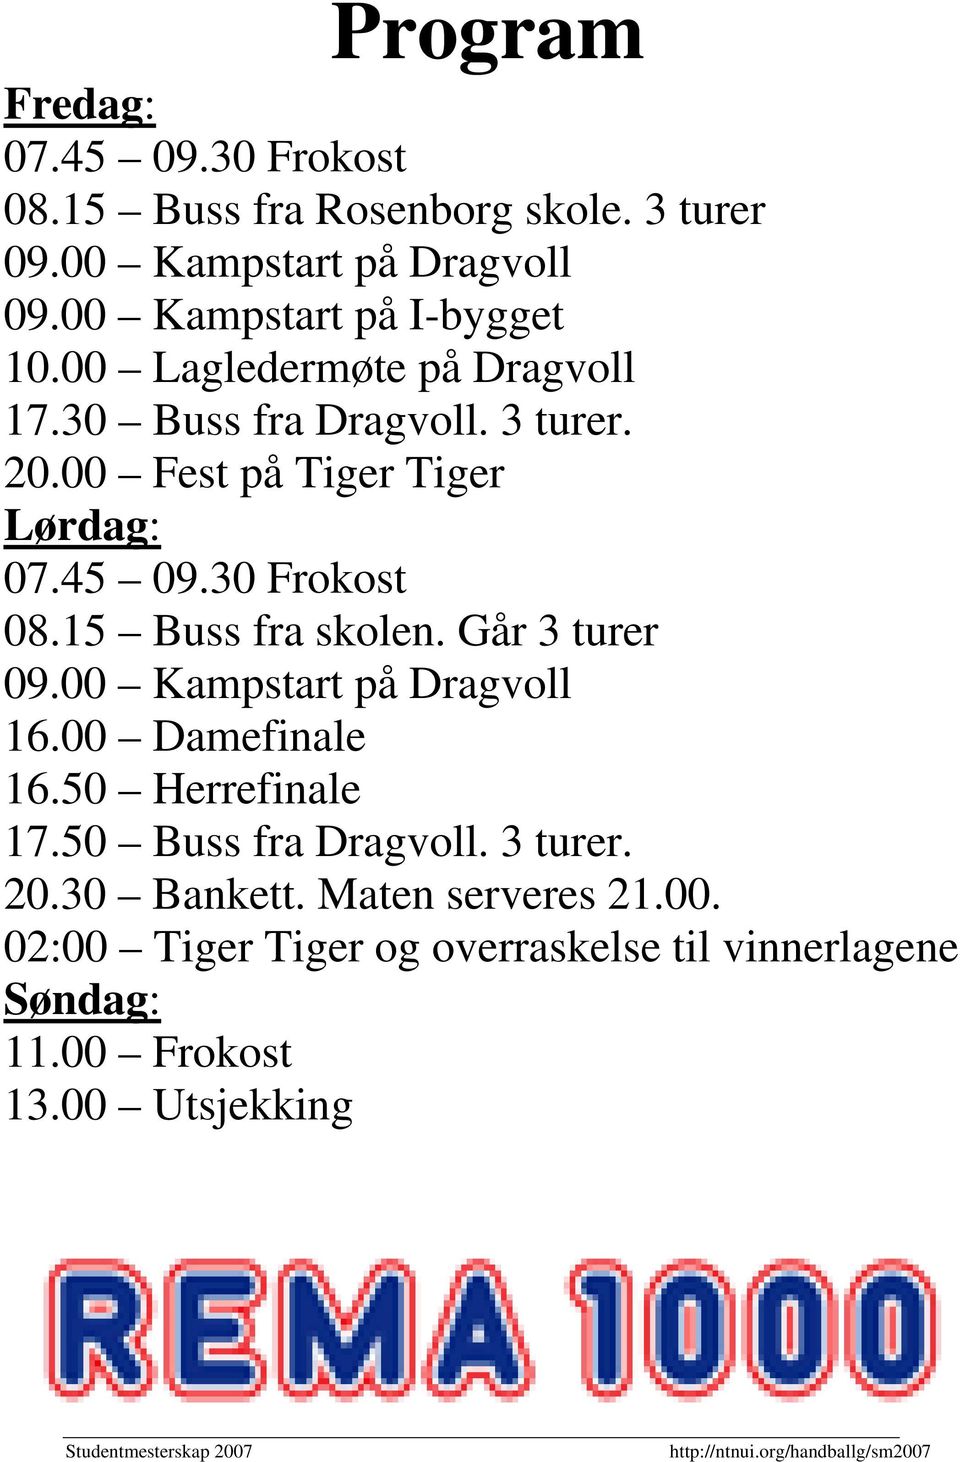 45 09.30 Frokost 08.15 Buss fra skolen. Går 3 turer 09.00 Kampstart på Dragvoll 16.00 Damefinale 16.50 Herrefinale 17.